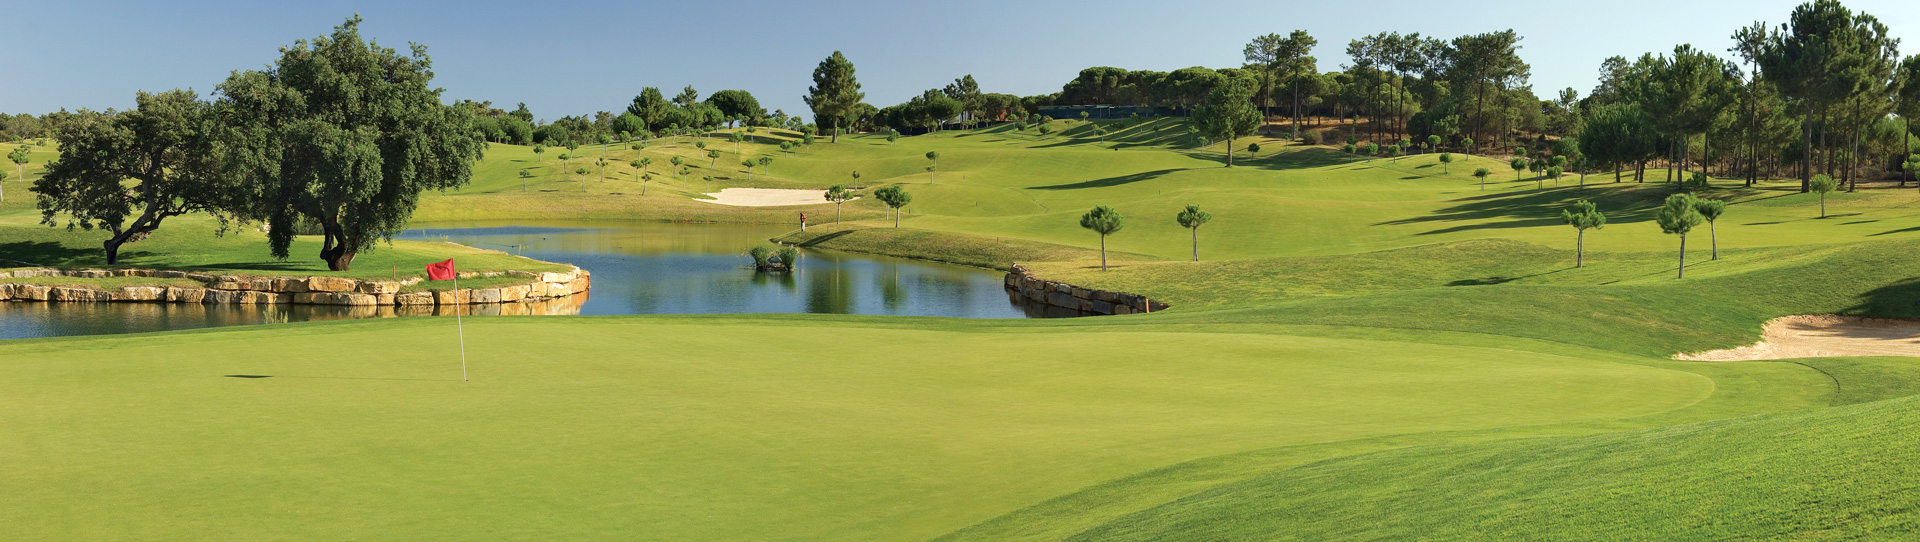 Portugal golf holidays - Pinheiros Altos 3 Rounds Pack - Photo 2